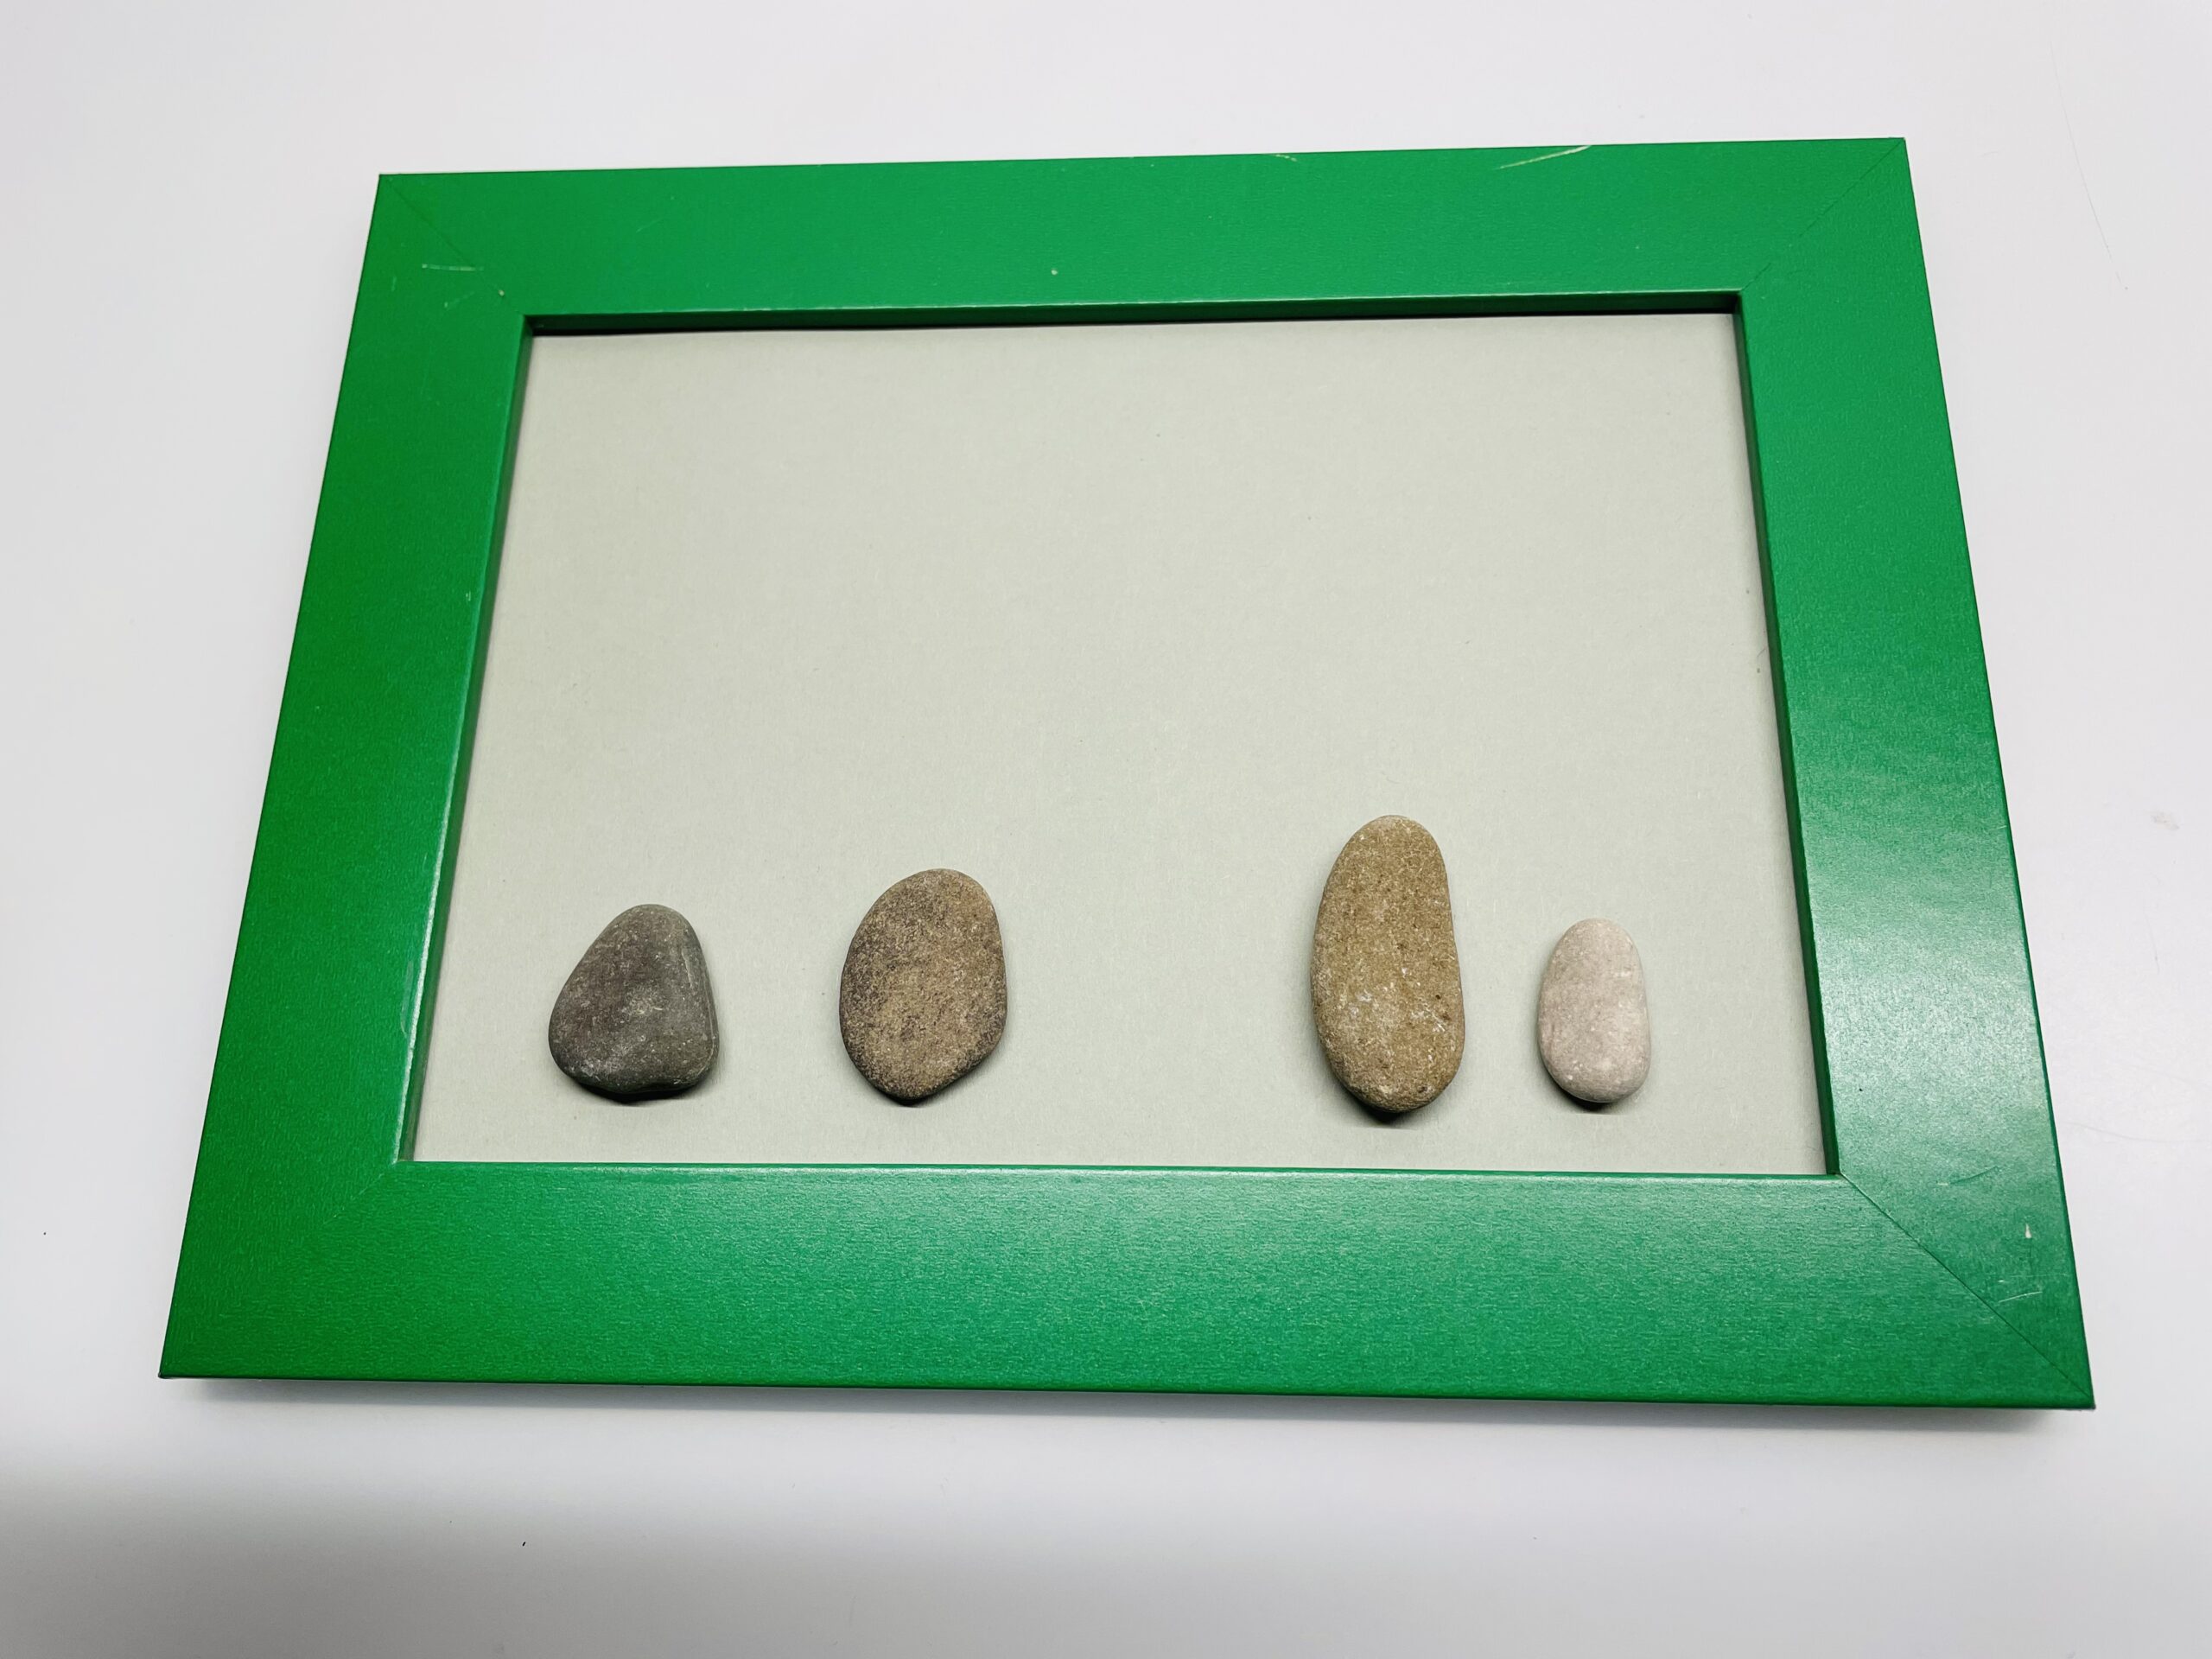 Bild zum Schritt 2 für die Kinder-Beschäftigung: 'Anschließend legt ihr 4 längliche abgerundete Steine auf den Rahmen....'